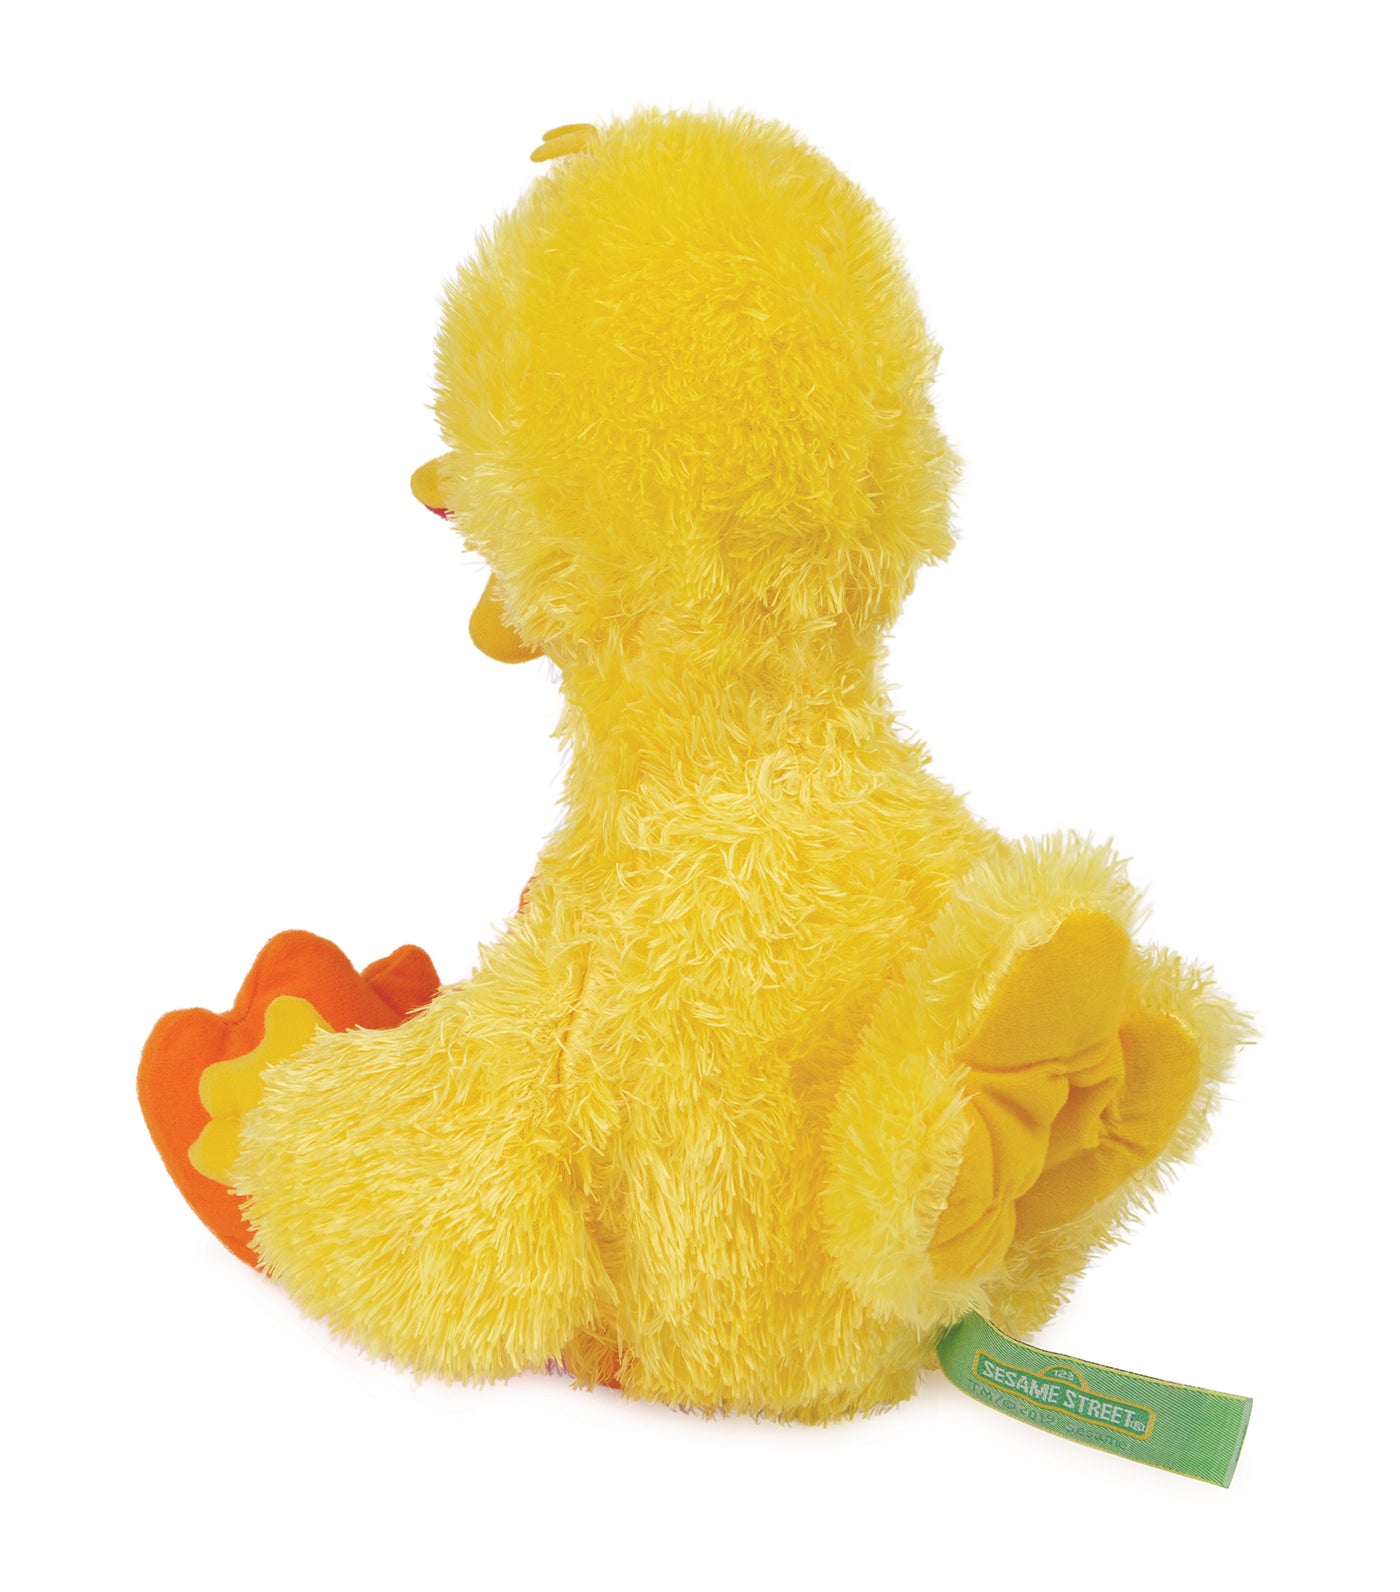 Sesame Street Big Bird Plushie - 14in